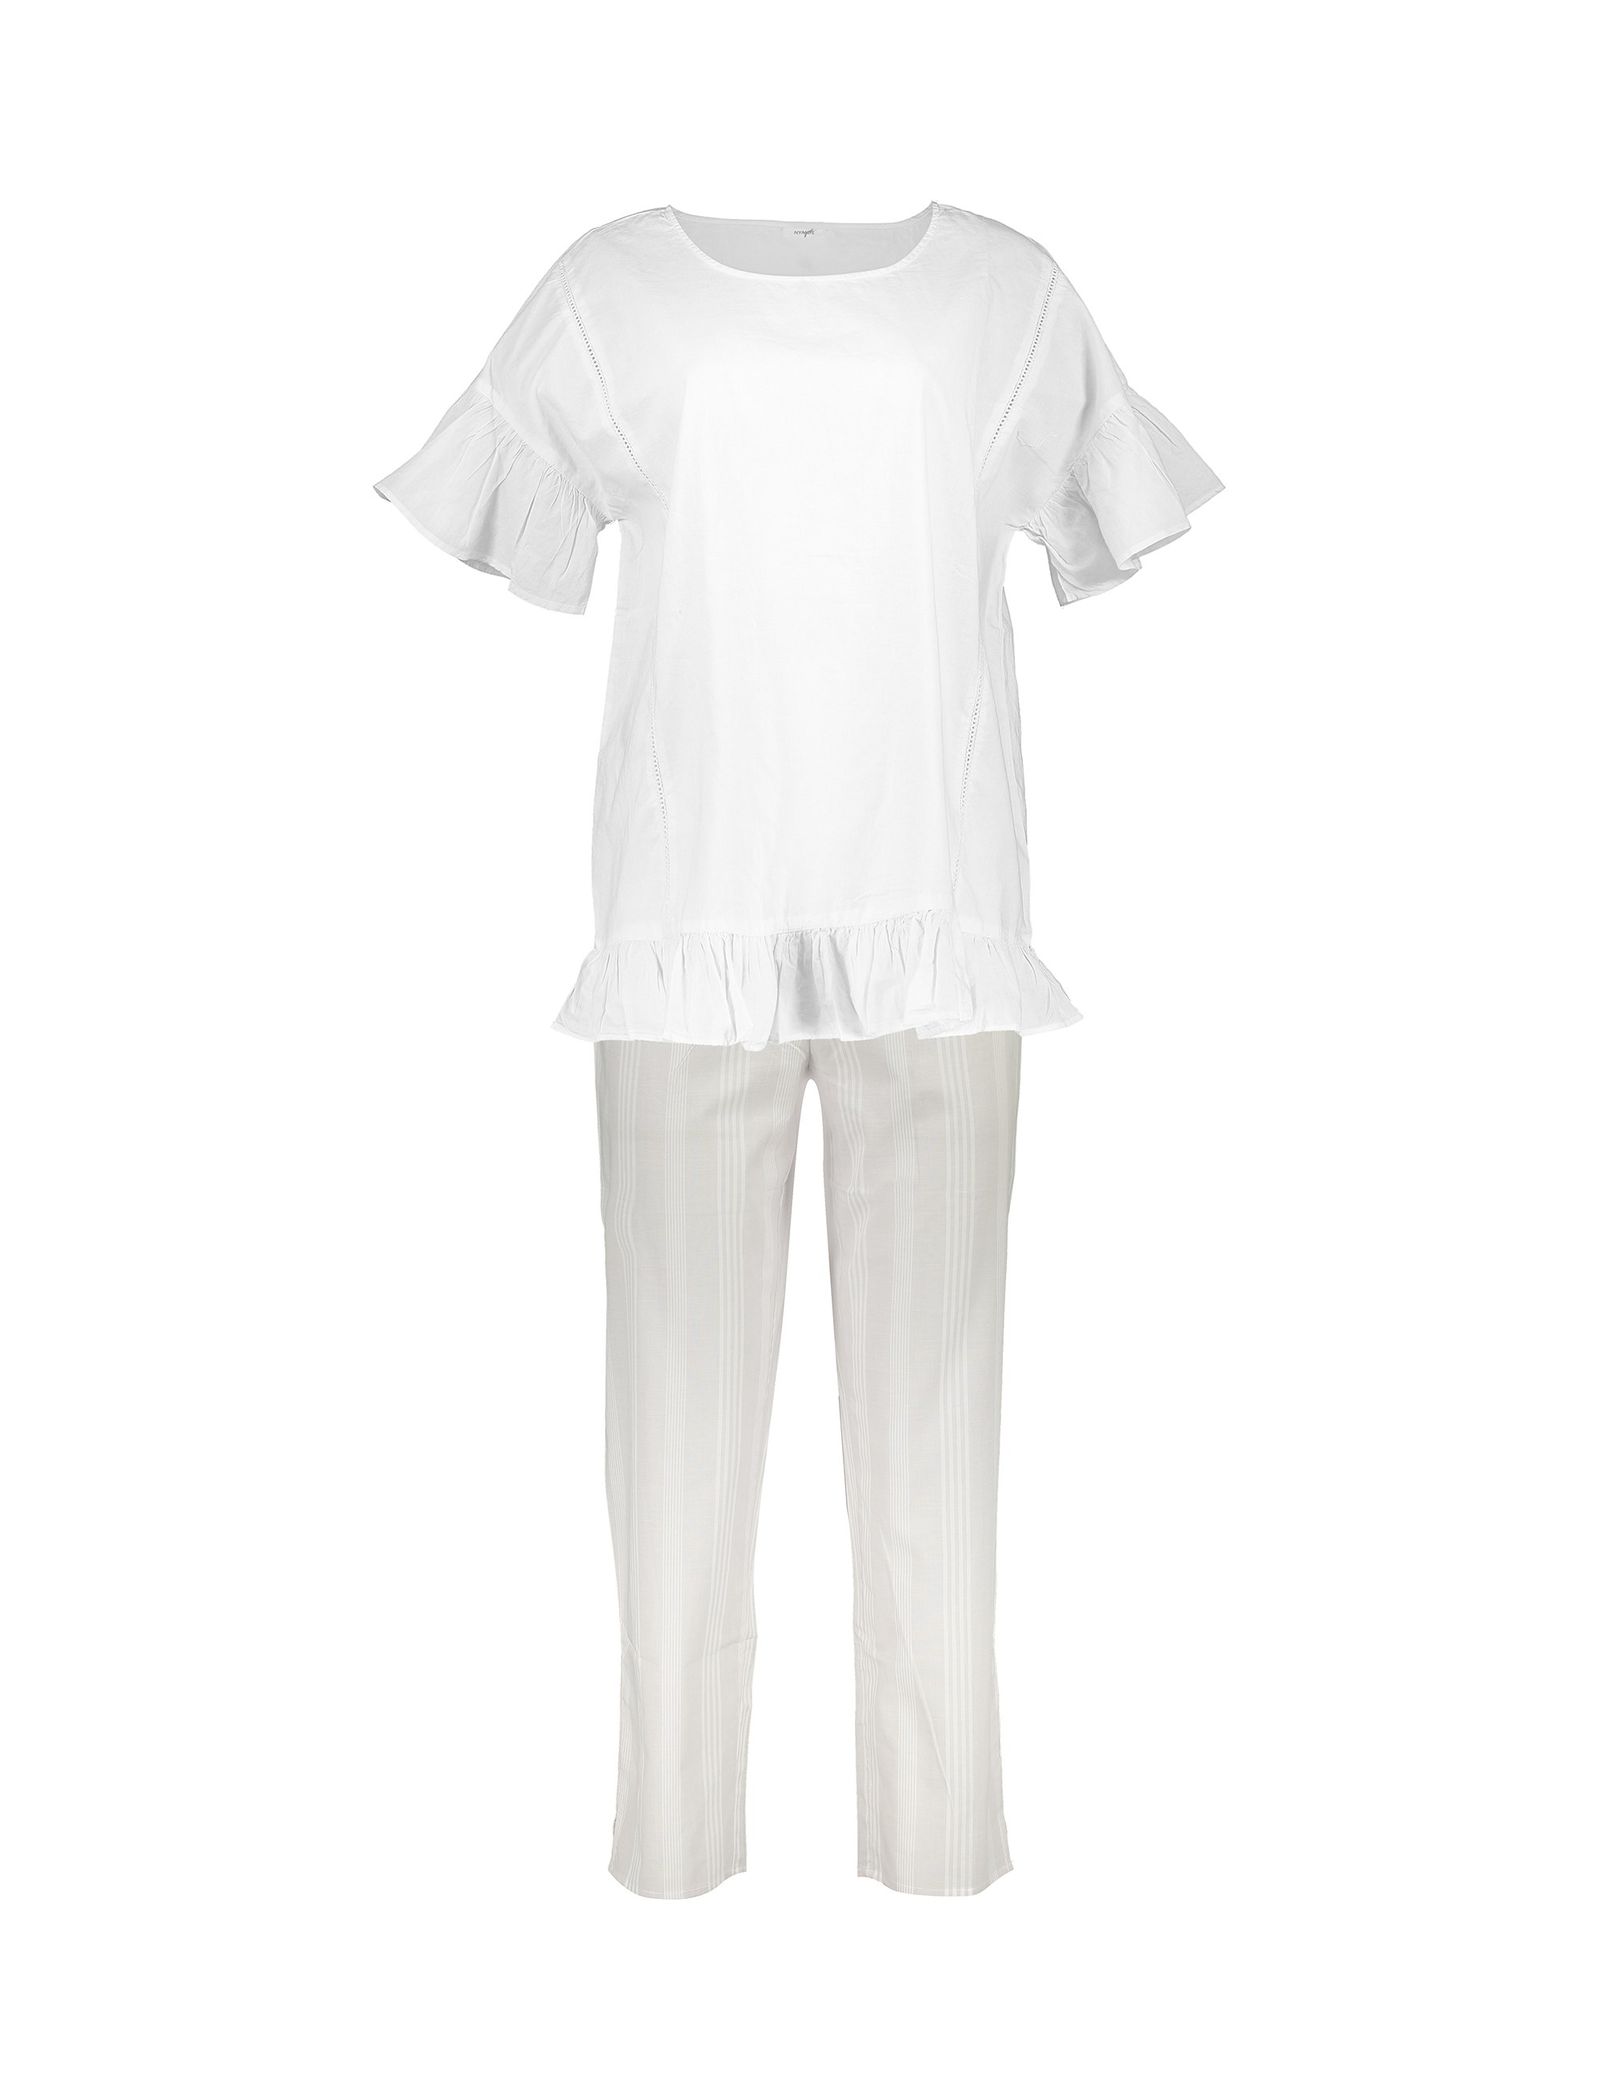 تی شرت و شلوار نخی زنانه - یوپیم - طوسي و سفيد - 1